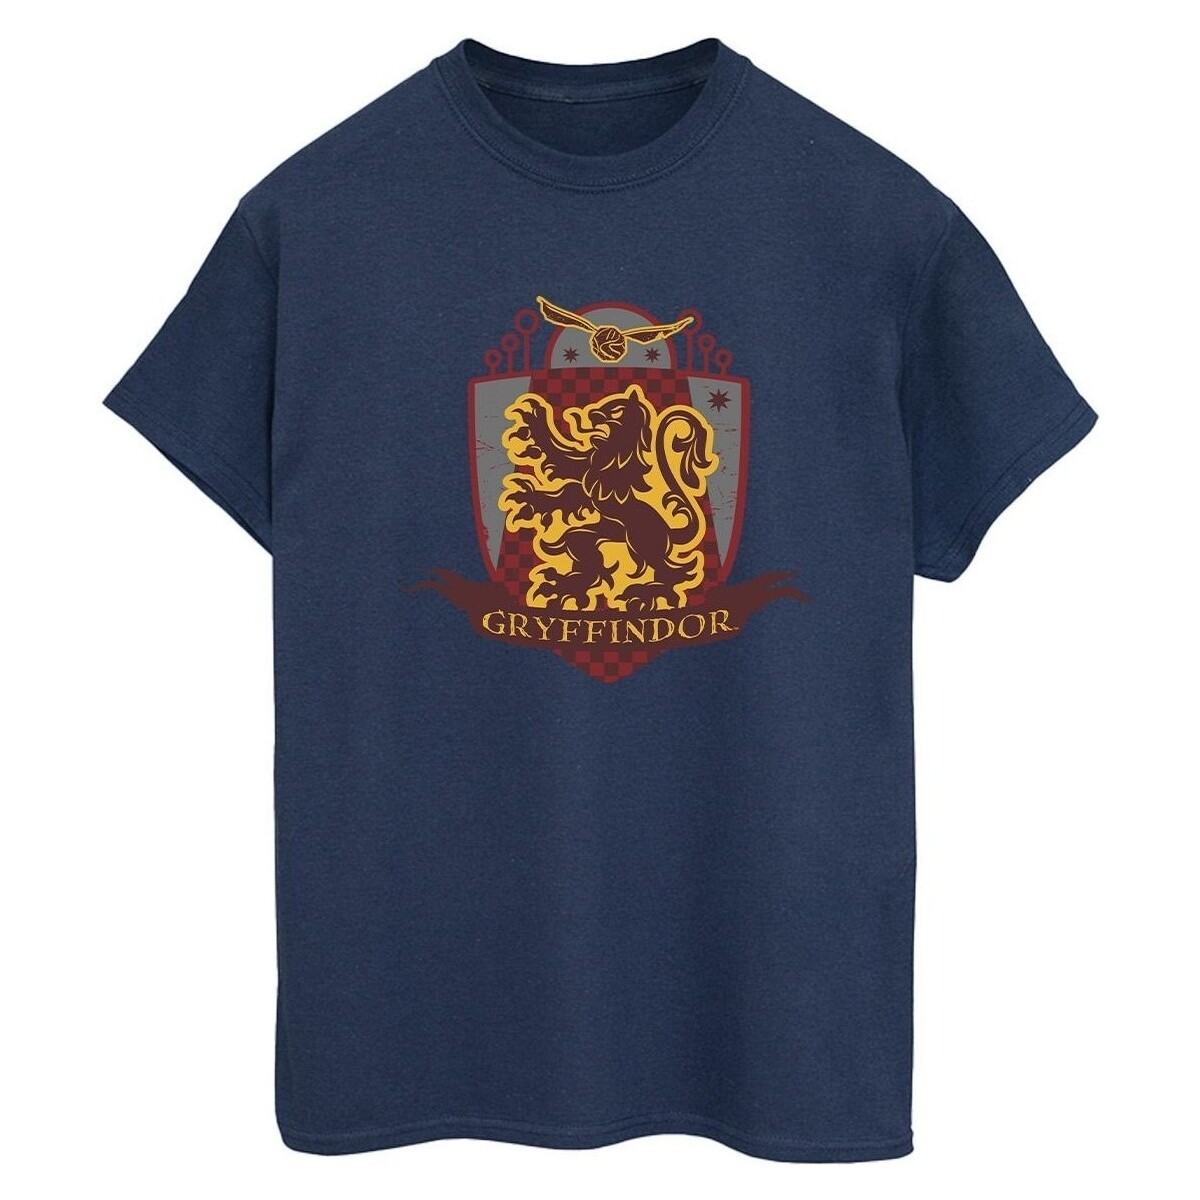 Abbigliamento Donna T-shirts a maniche lunghe Harry Potter Gryffindor Chest Badge Blu